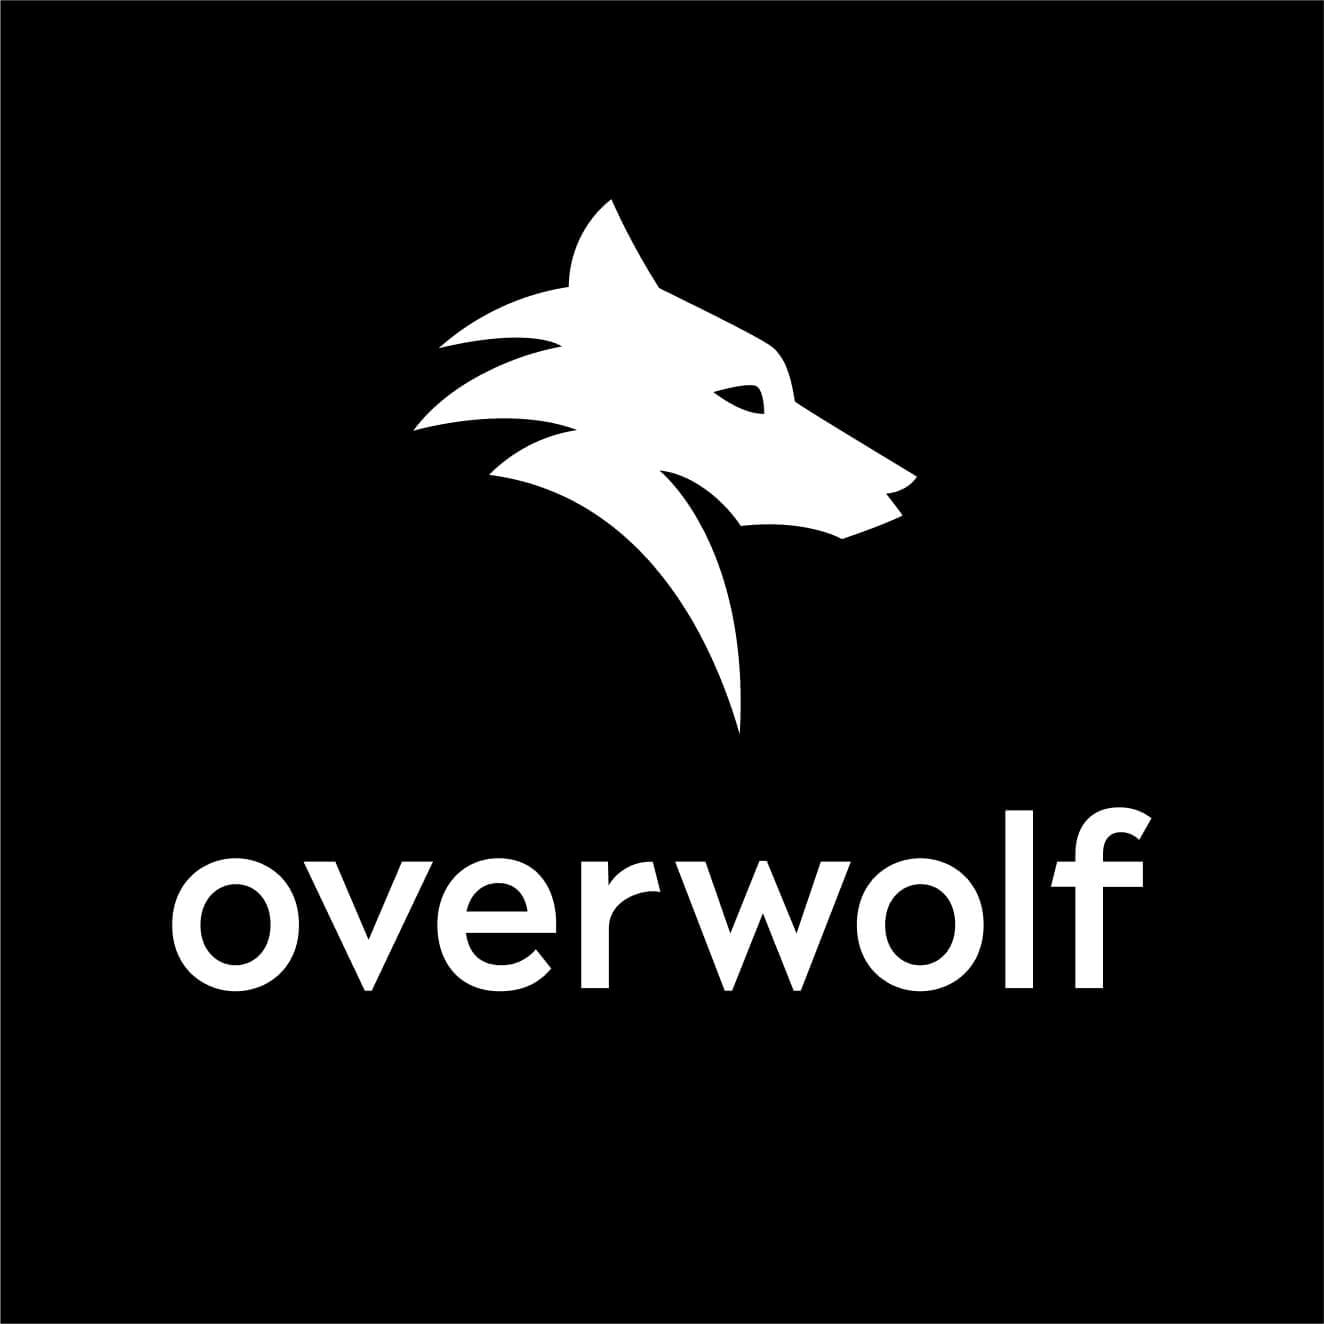 Overwolf website logo